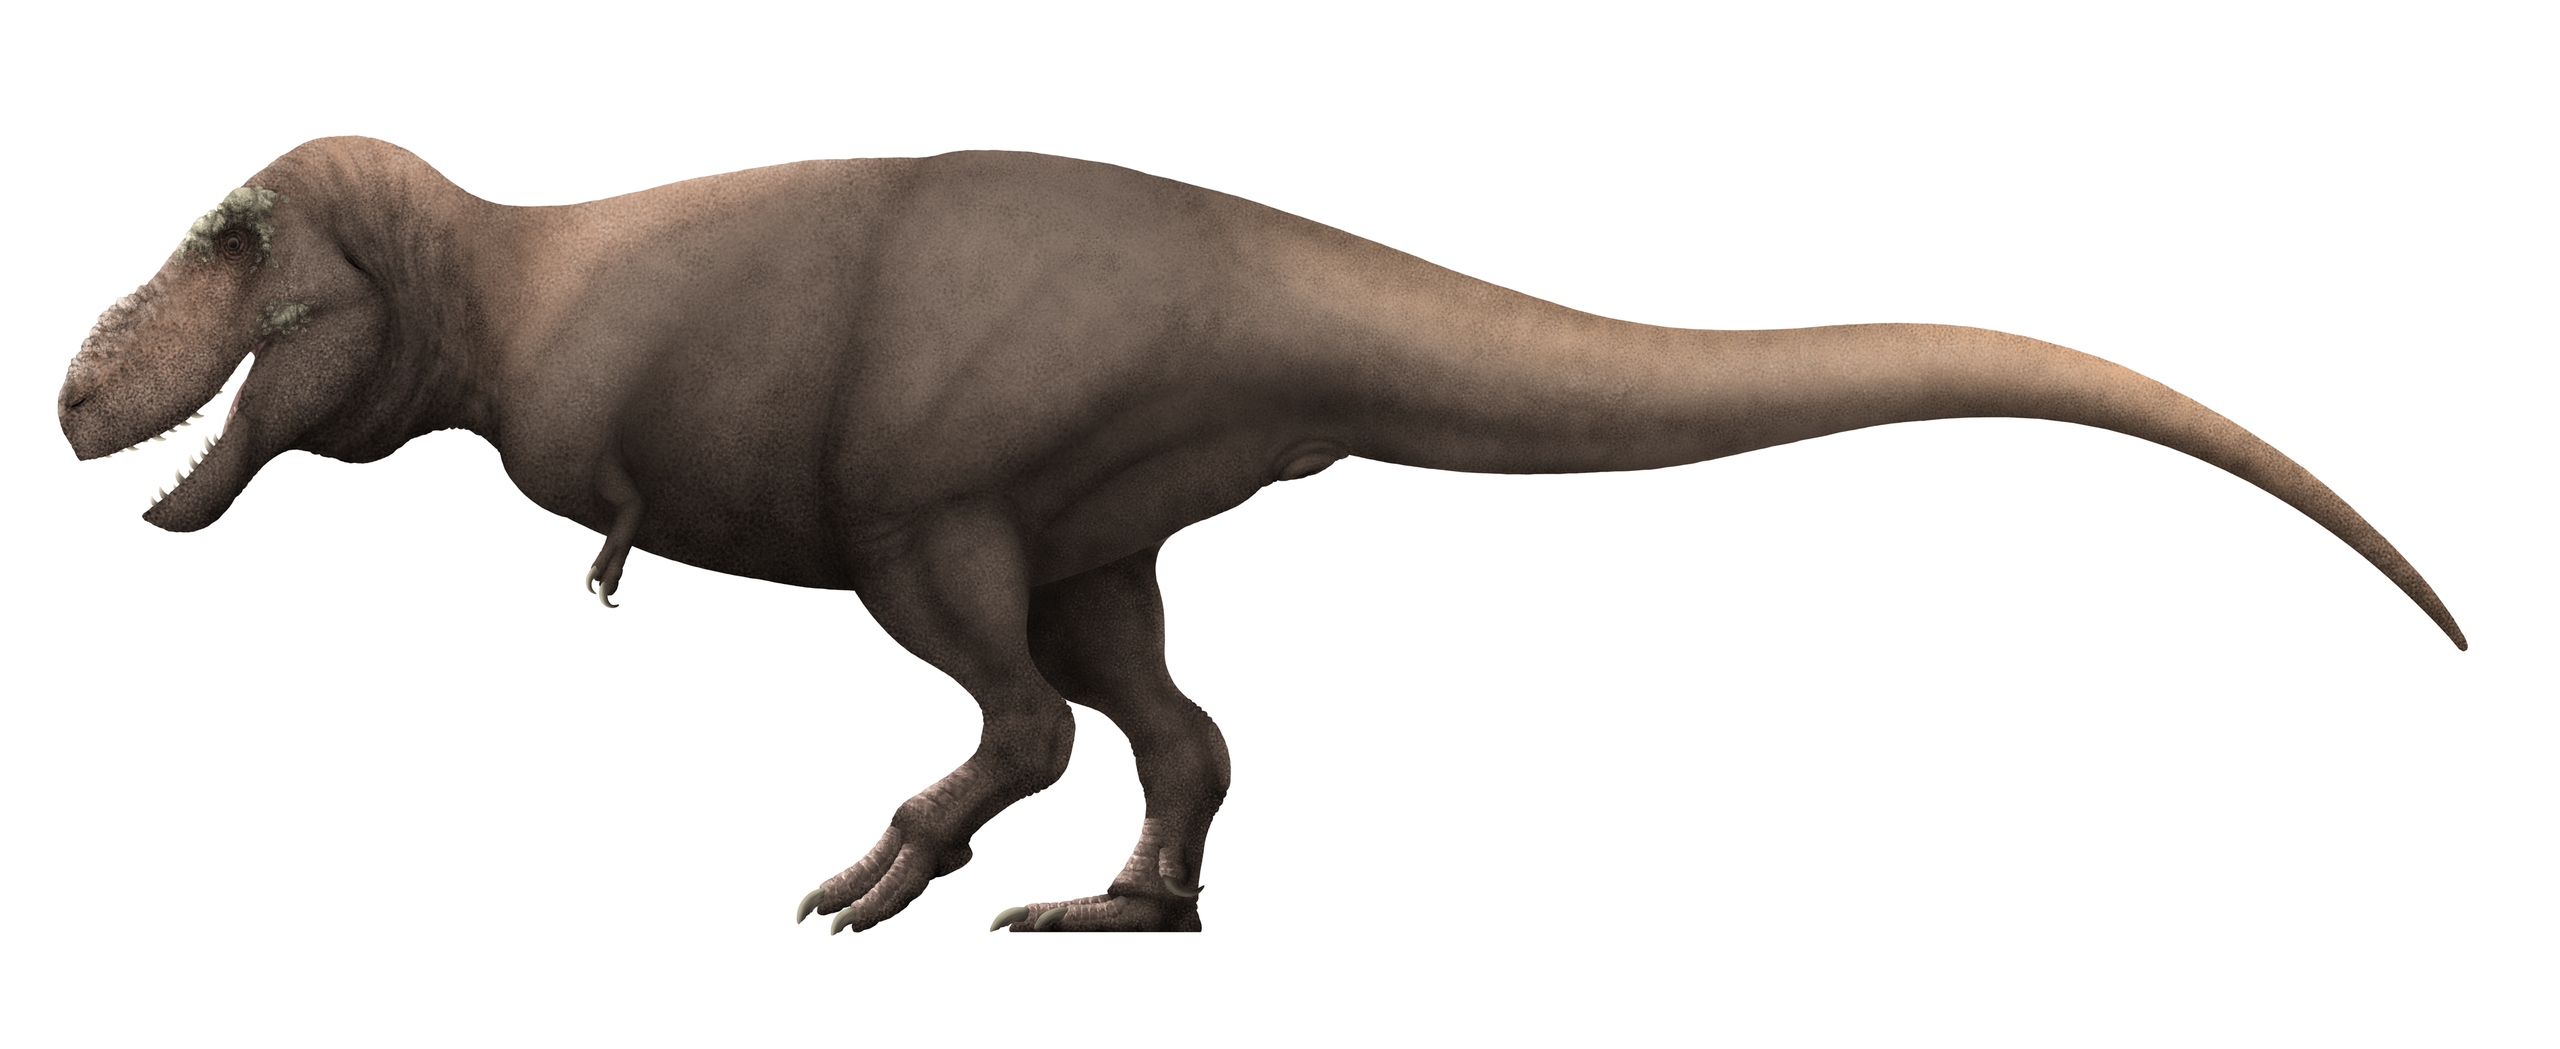 Rekonstrukce pravděpodobného vzezření dospělého jedince druhu Tarbosaurus bataar. Tento obří tyranosauridní teropod dosahoval délky 10 až 12 metrů a hmotnosti kolem 5000 kg, byl tedy jen o trochu menší než jeho severoamerický příbuzný Tyrannosaurus r